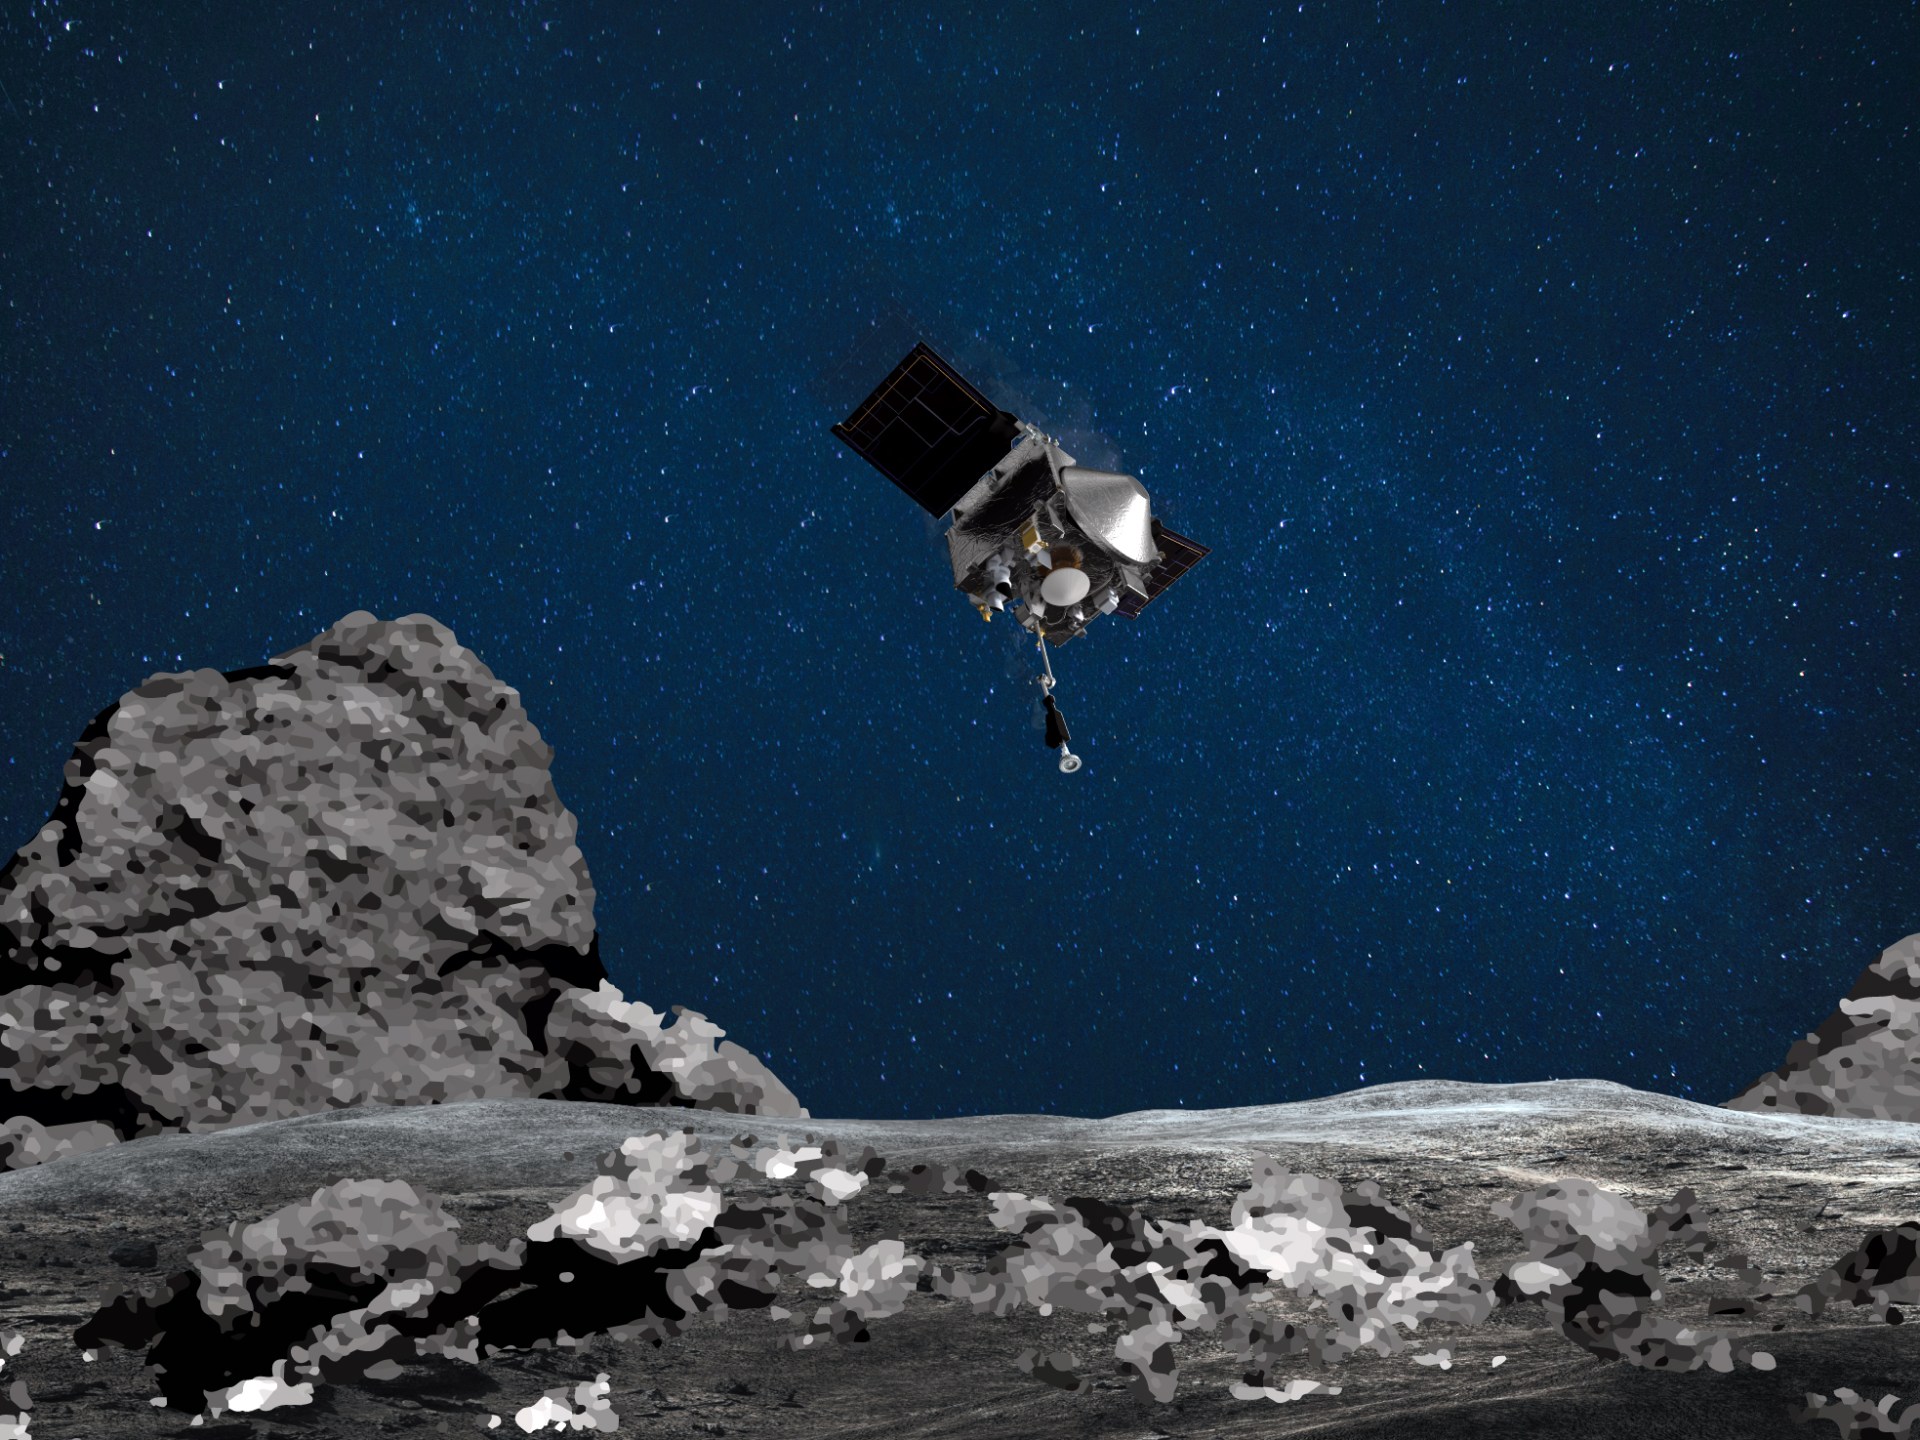 NASA atskleidžia pavyzdį, paimtą iš netoli Žemės esančio asteroido Bennu paviršiaus  Kosmoso naujienos